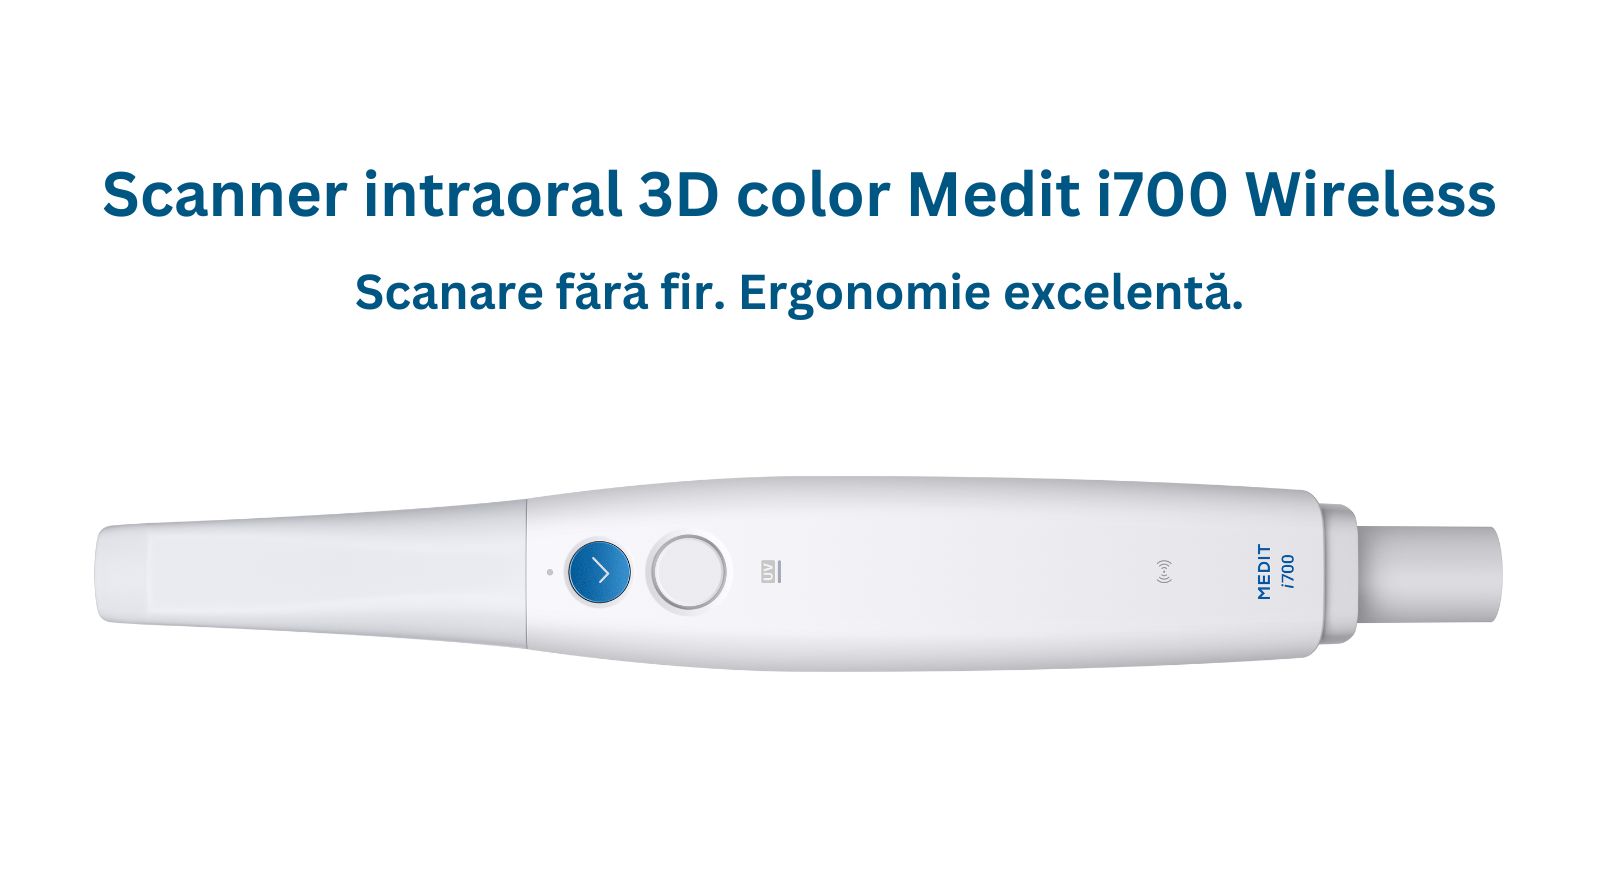 pachet-scanner-intraoral-3d-color-medit-i700-wireless-laptop-asus-03